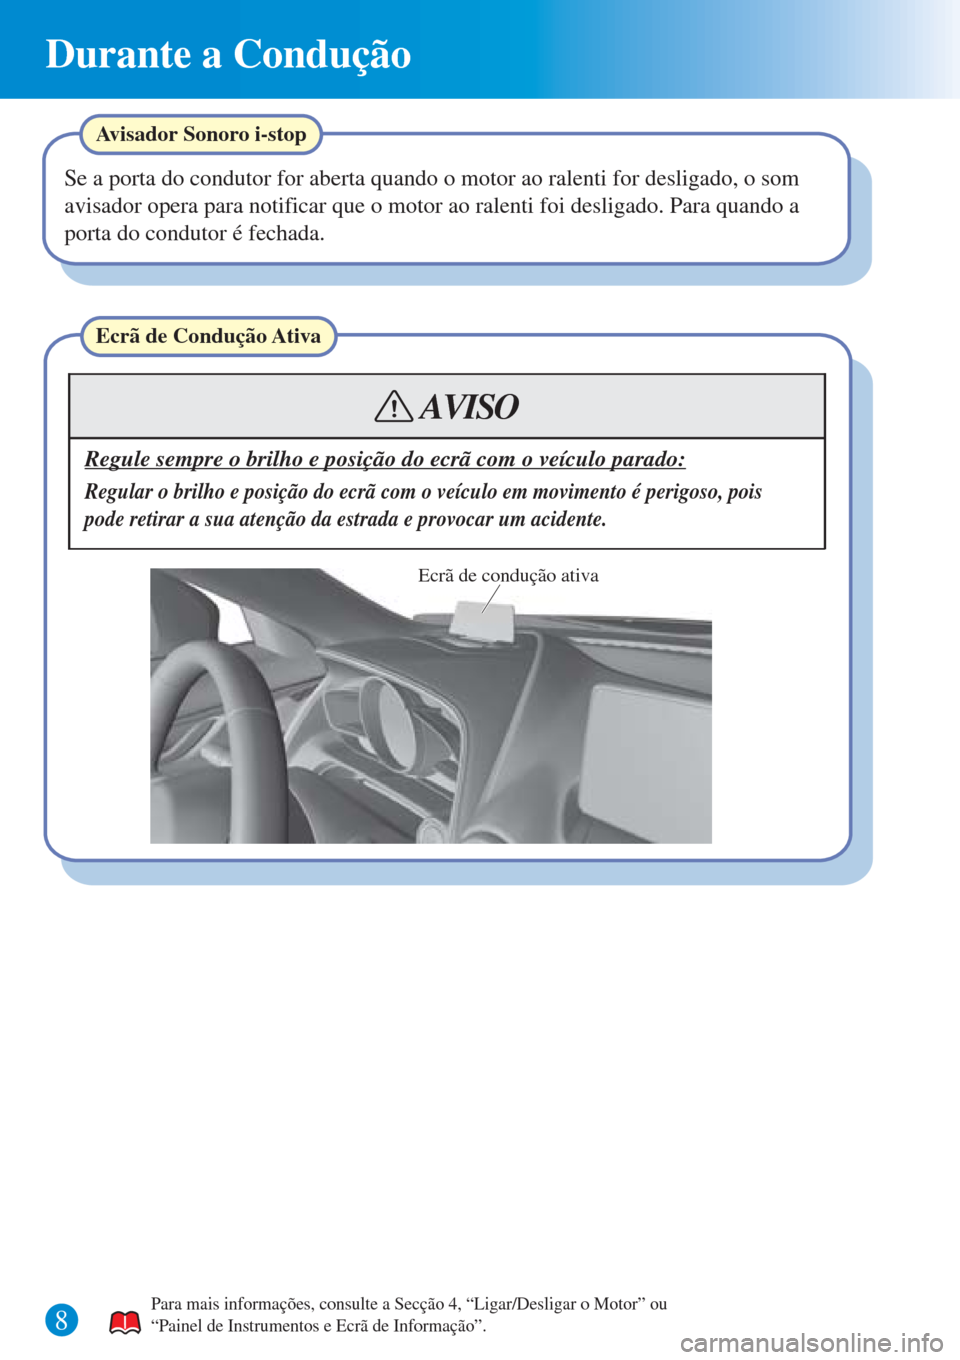 MAZDA MODEL CX-3 2016  Guia Rápido (in Portuguese) Durante a Condução
8
Ecrã de Condução Ativa
Regule sempre o brilho e posição do ecrã com o veículo parado:
Regular o brilho e posição do ecrã com o veículo em movimento é perigoso, pois 